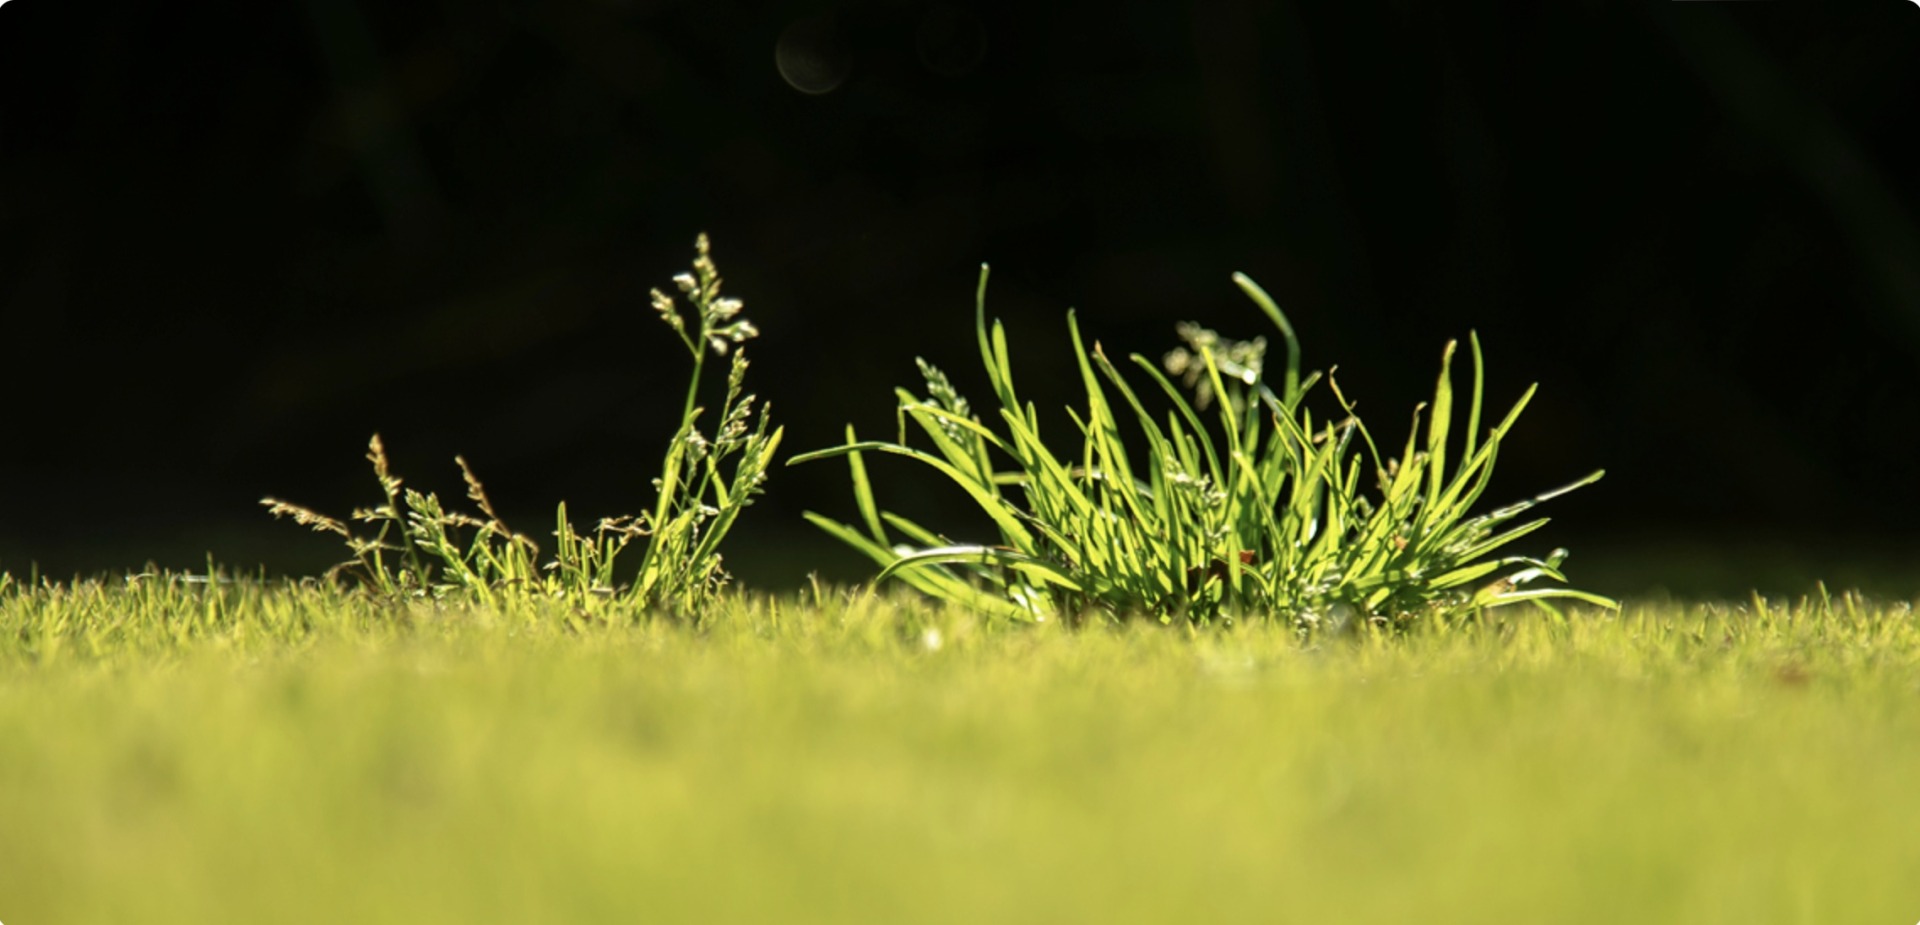 Winter Grass (Poa annua)